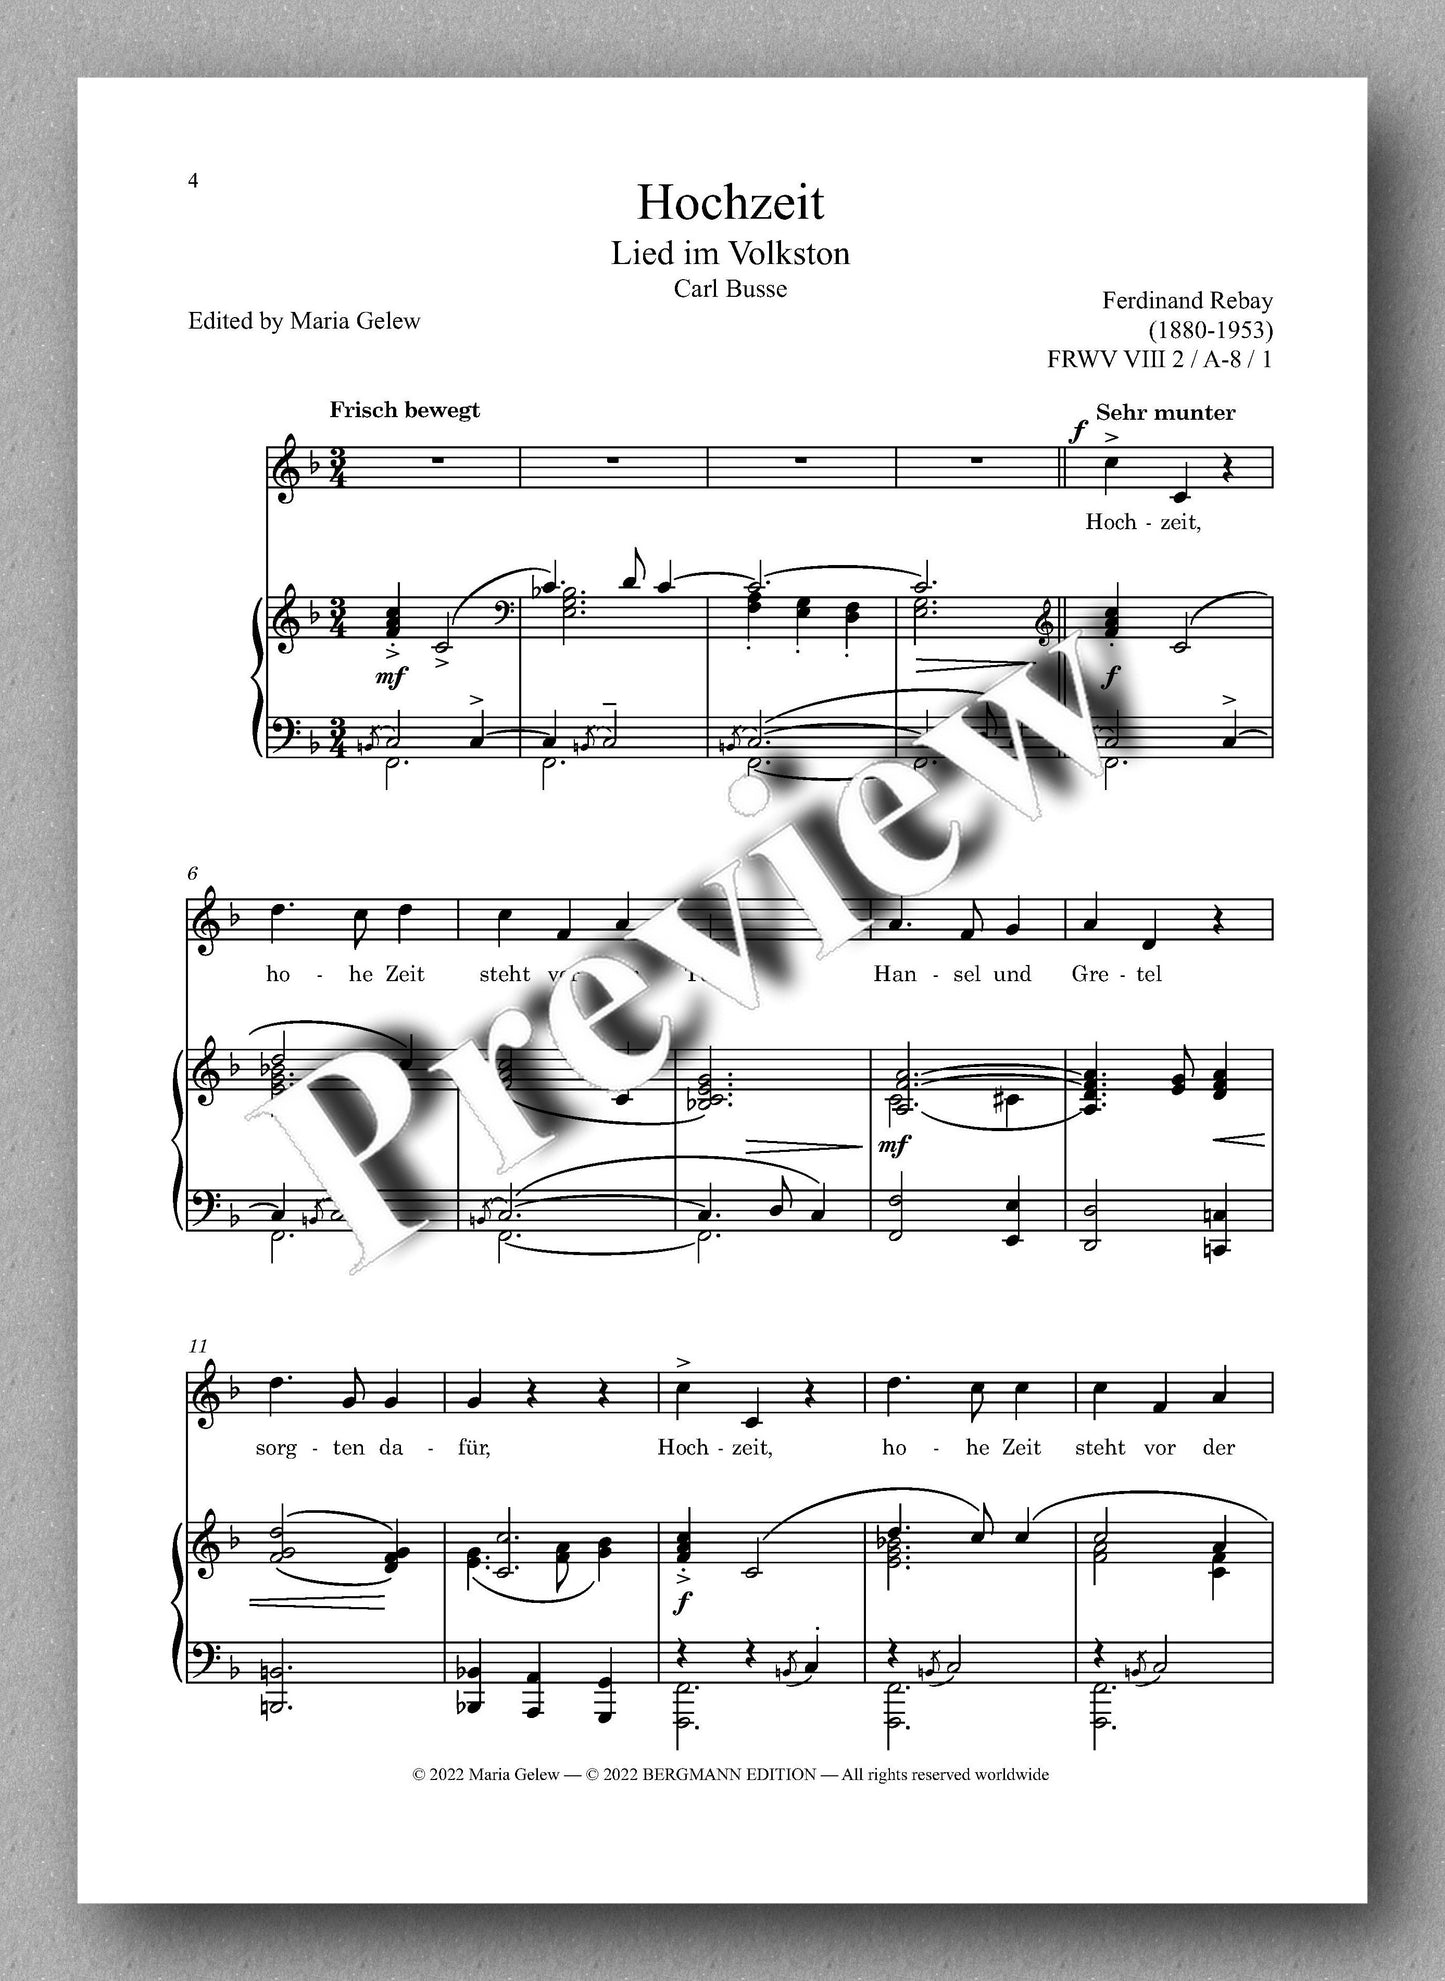 Ferdinand Rebay, Lieder nach Gedichten von Carl Busse und Max Bewer - preview of the music score 1